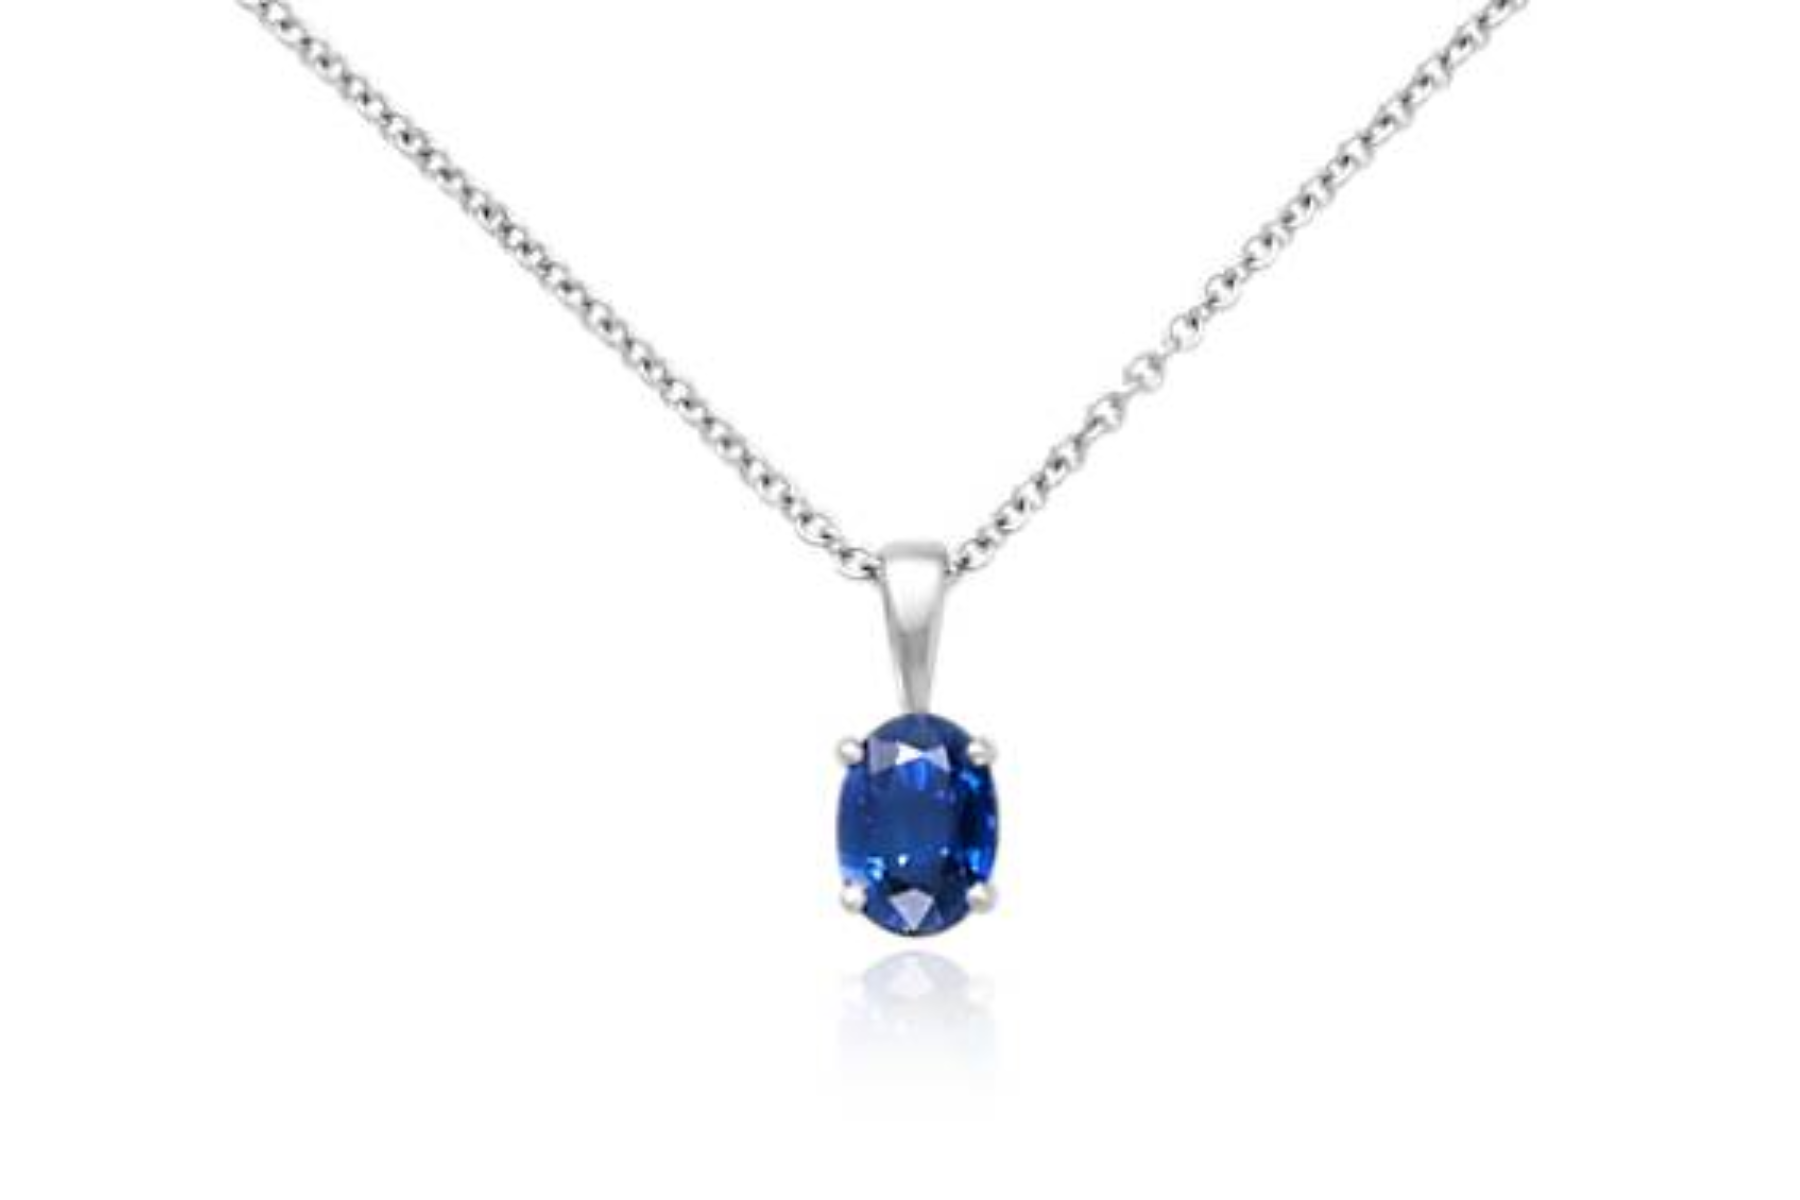 Sapphire pendant necklace